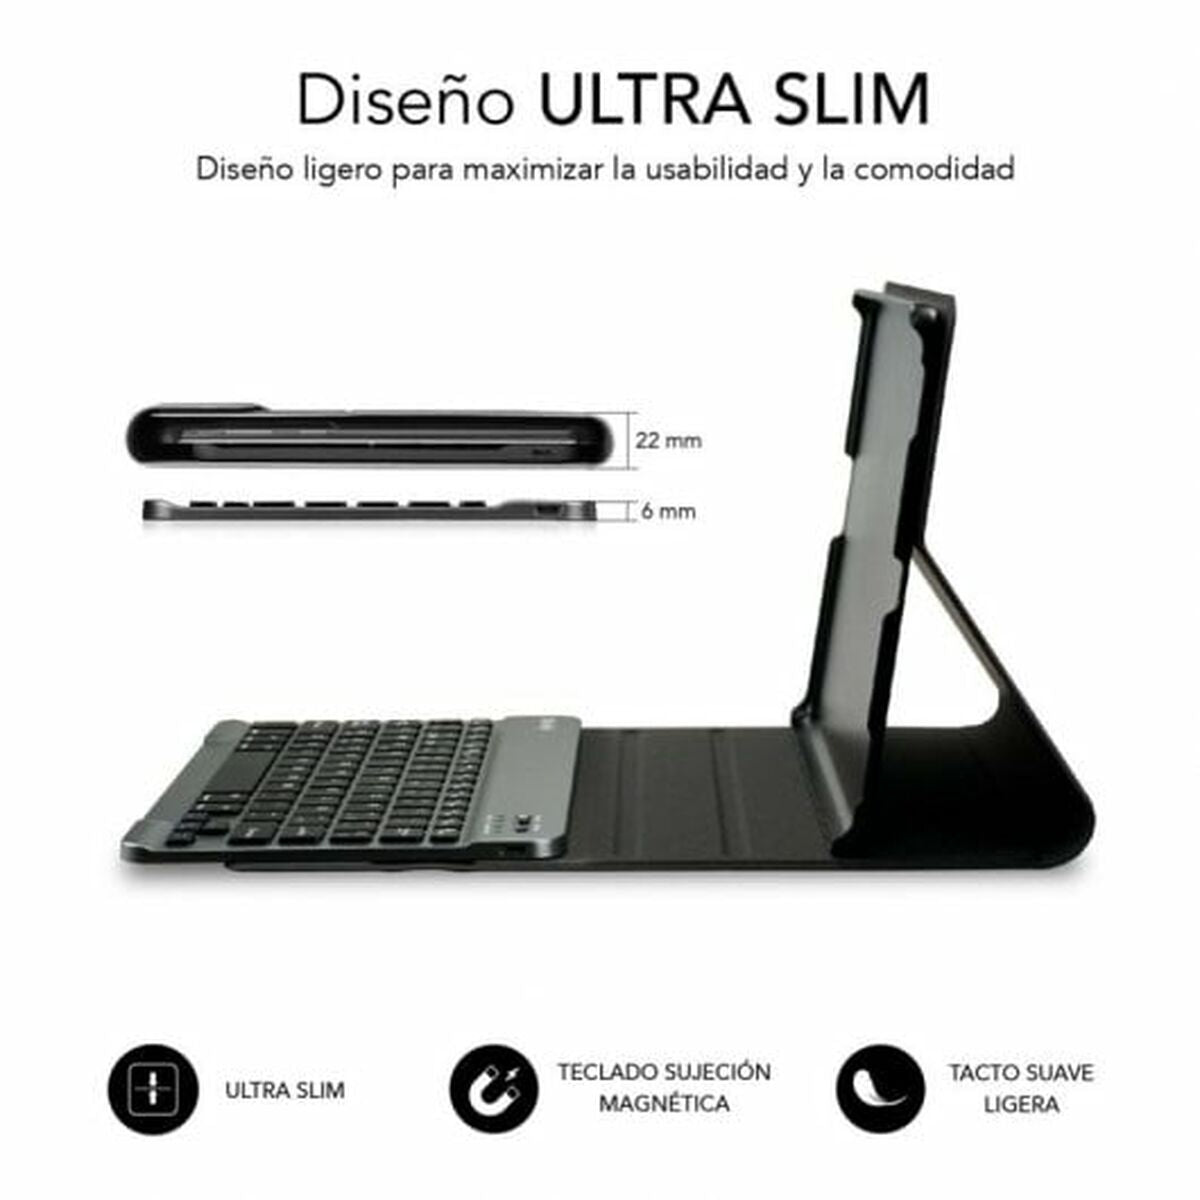 Bluetooth-Tastatur für Tablet Subblim SUBKT3-BTL200 Schwarz Qwerty Spanisch - CA International 